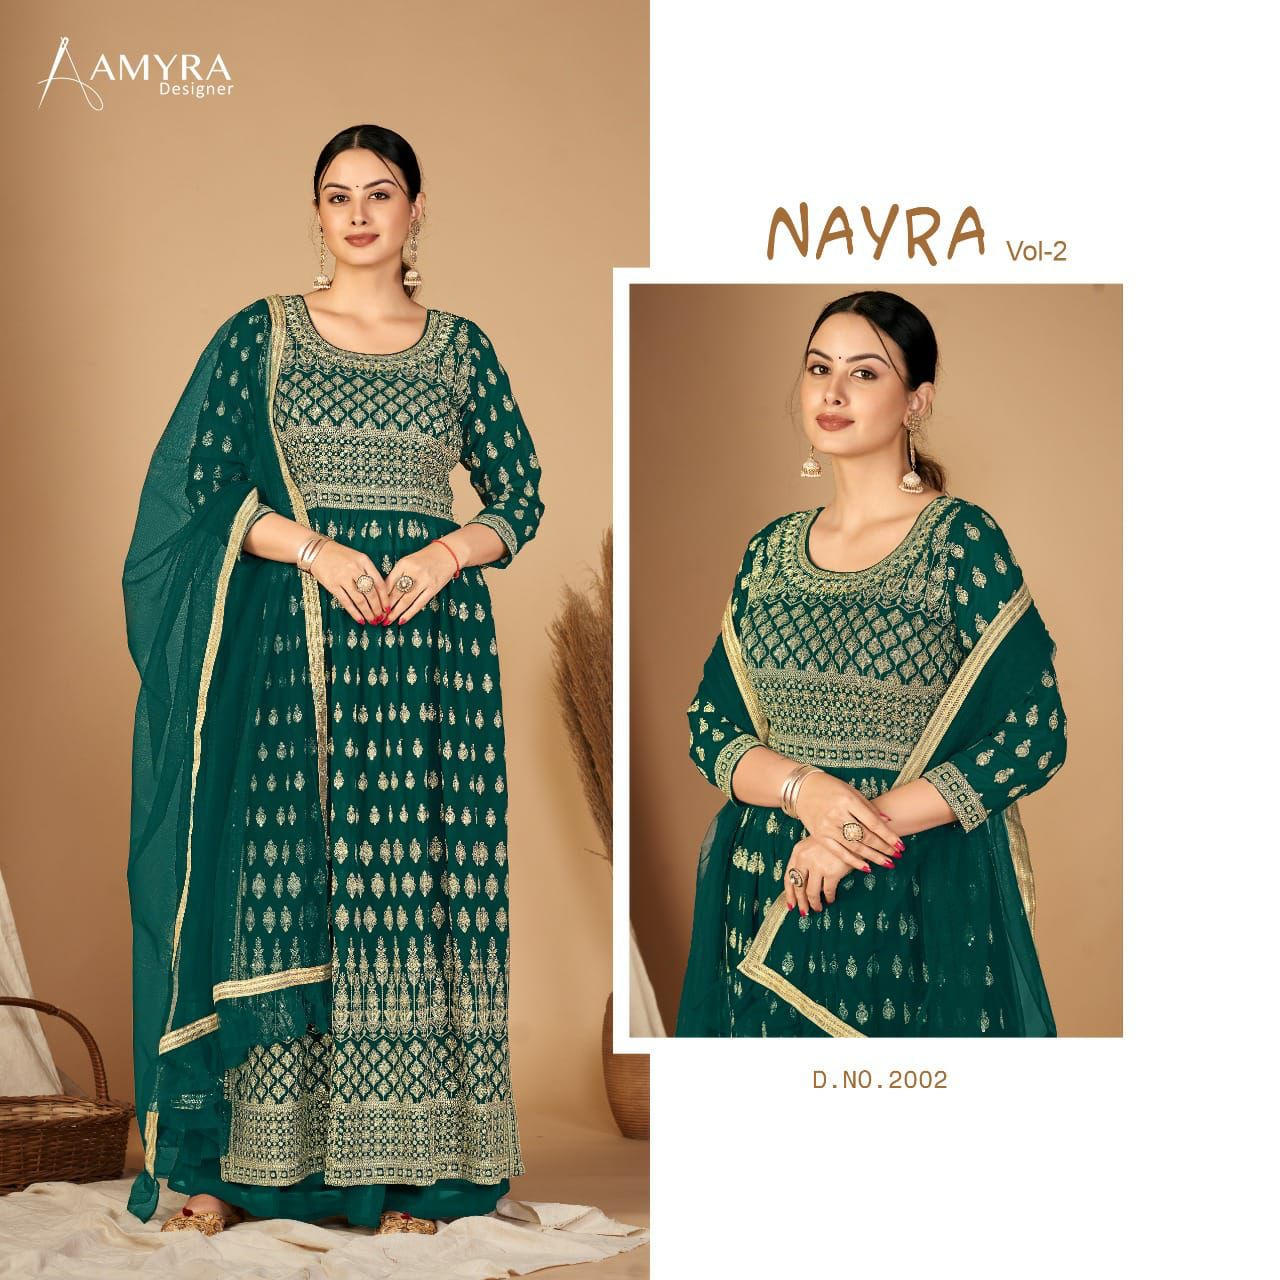 Amyra Nayra Vol 2 collection 2